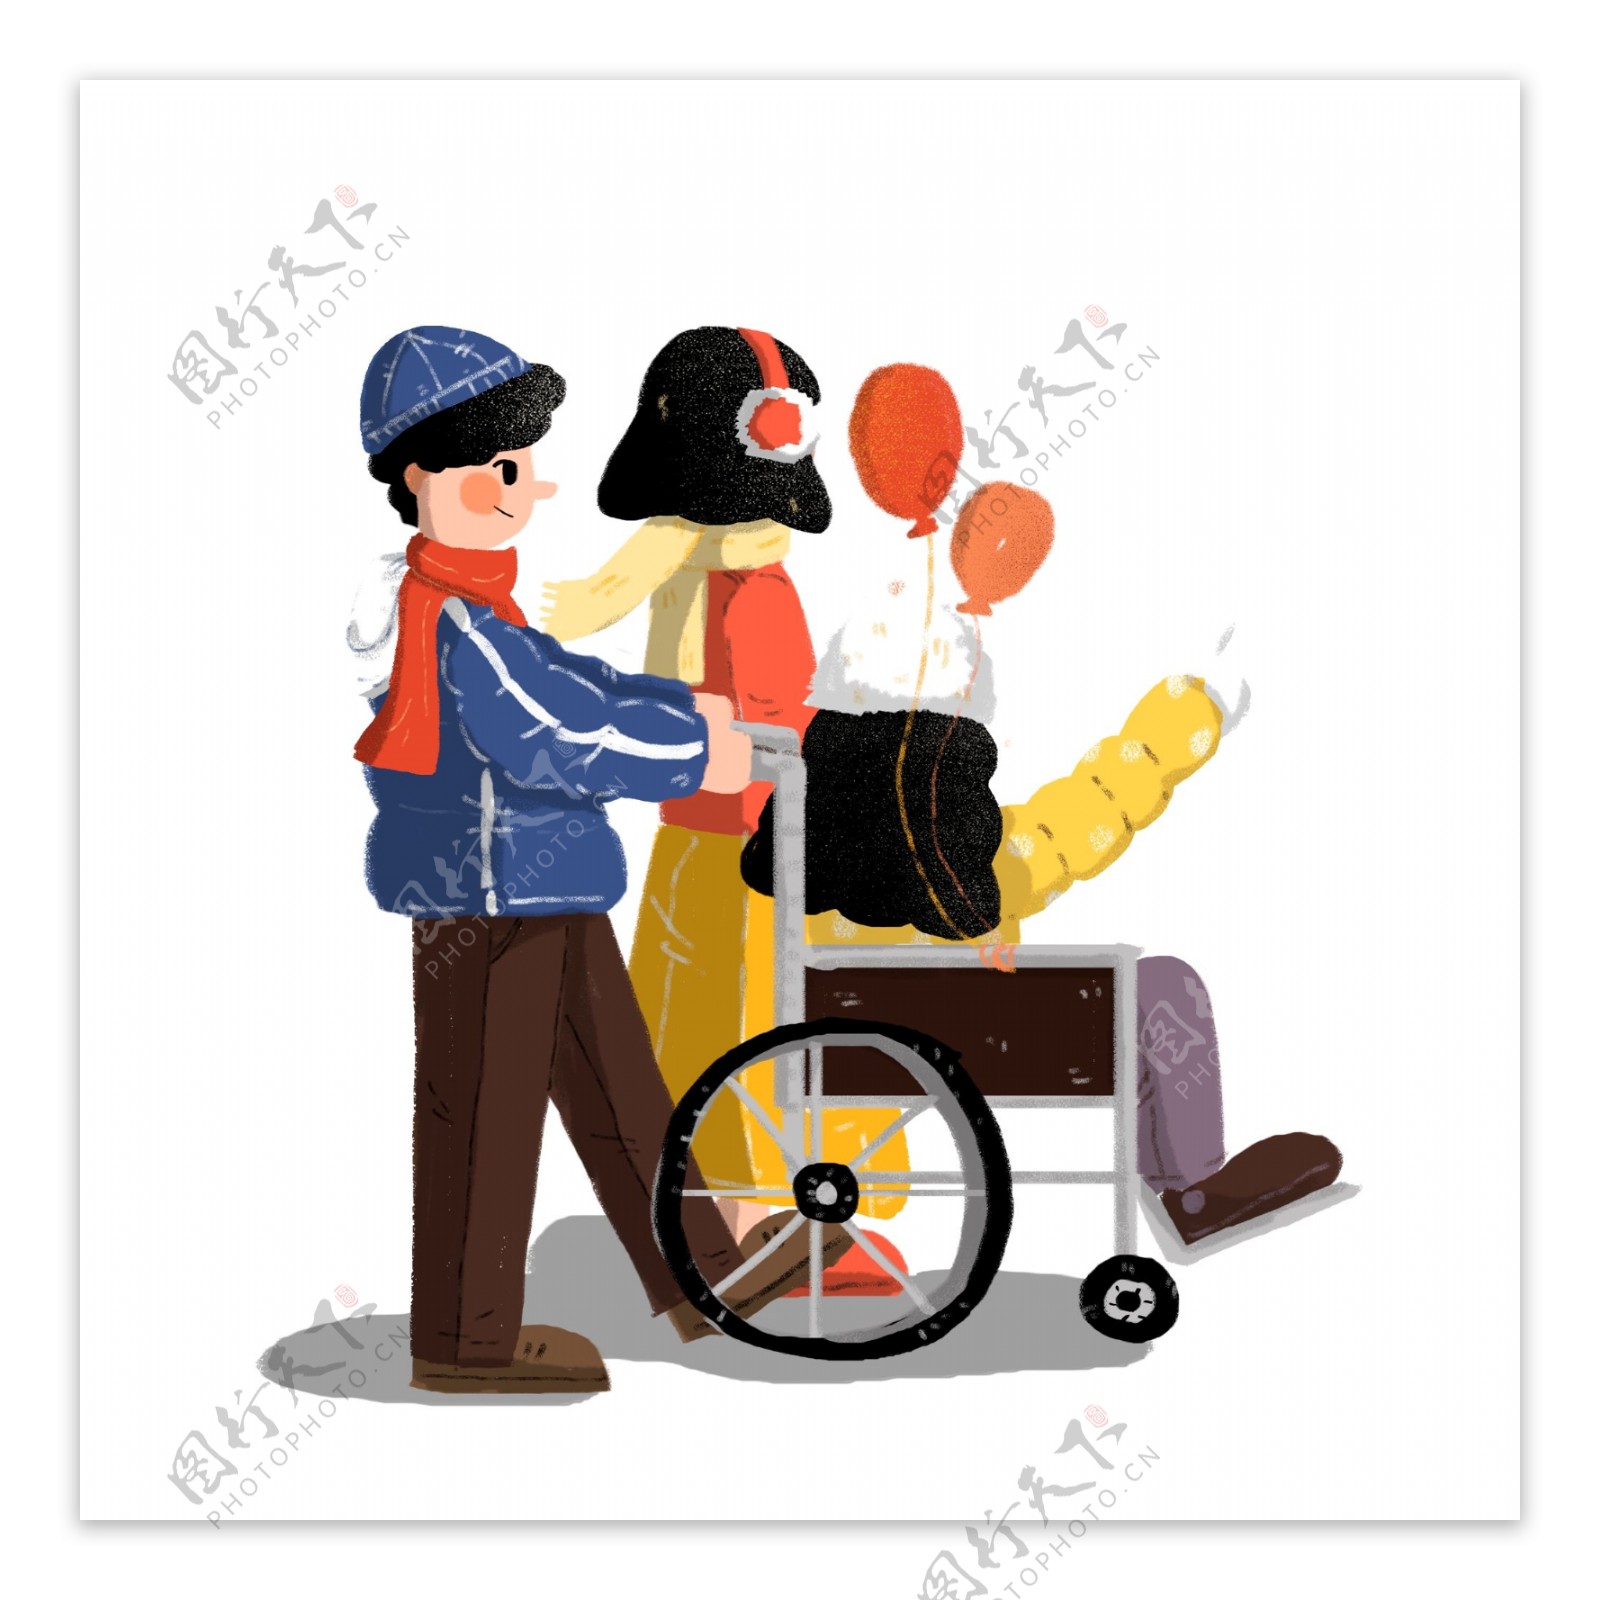 手绘推着轮椅散步的一家三口人物设计